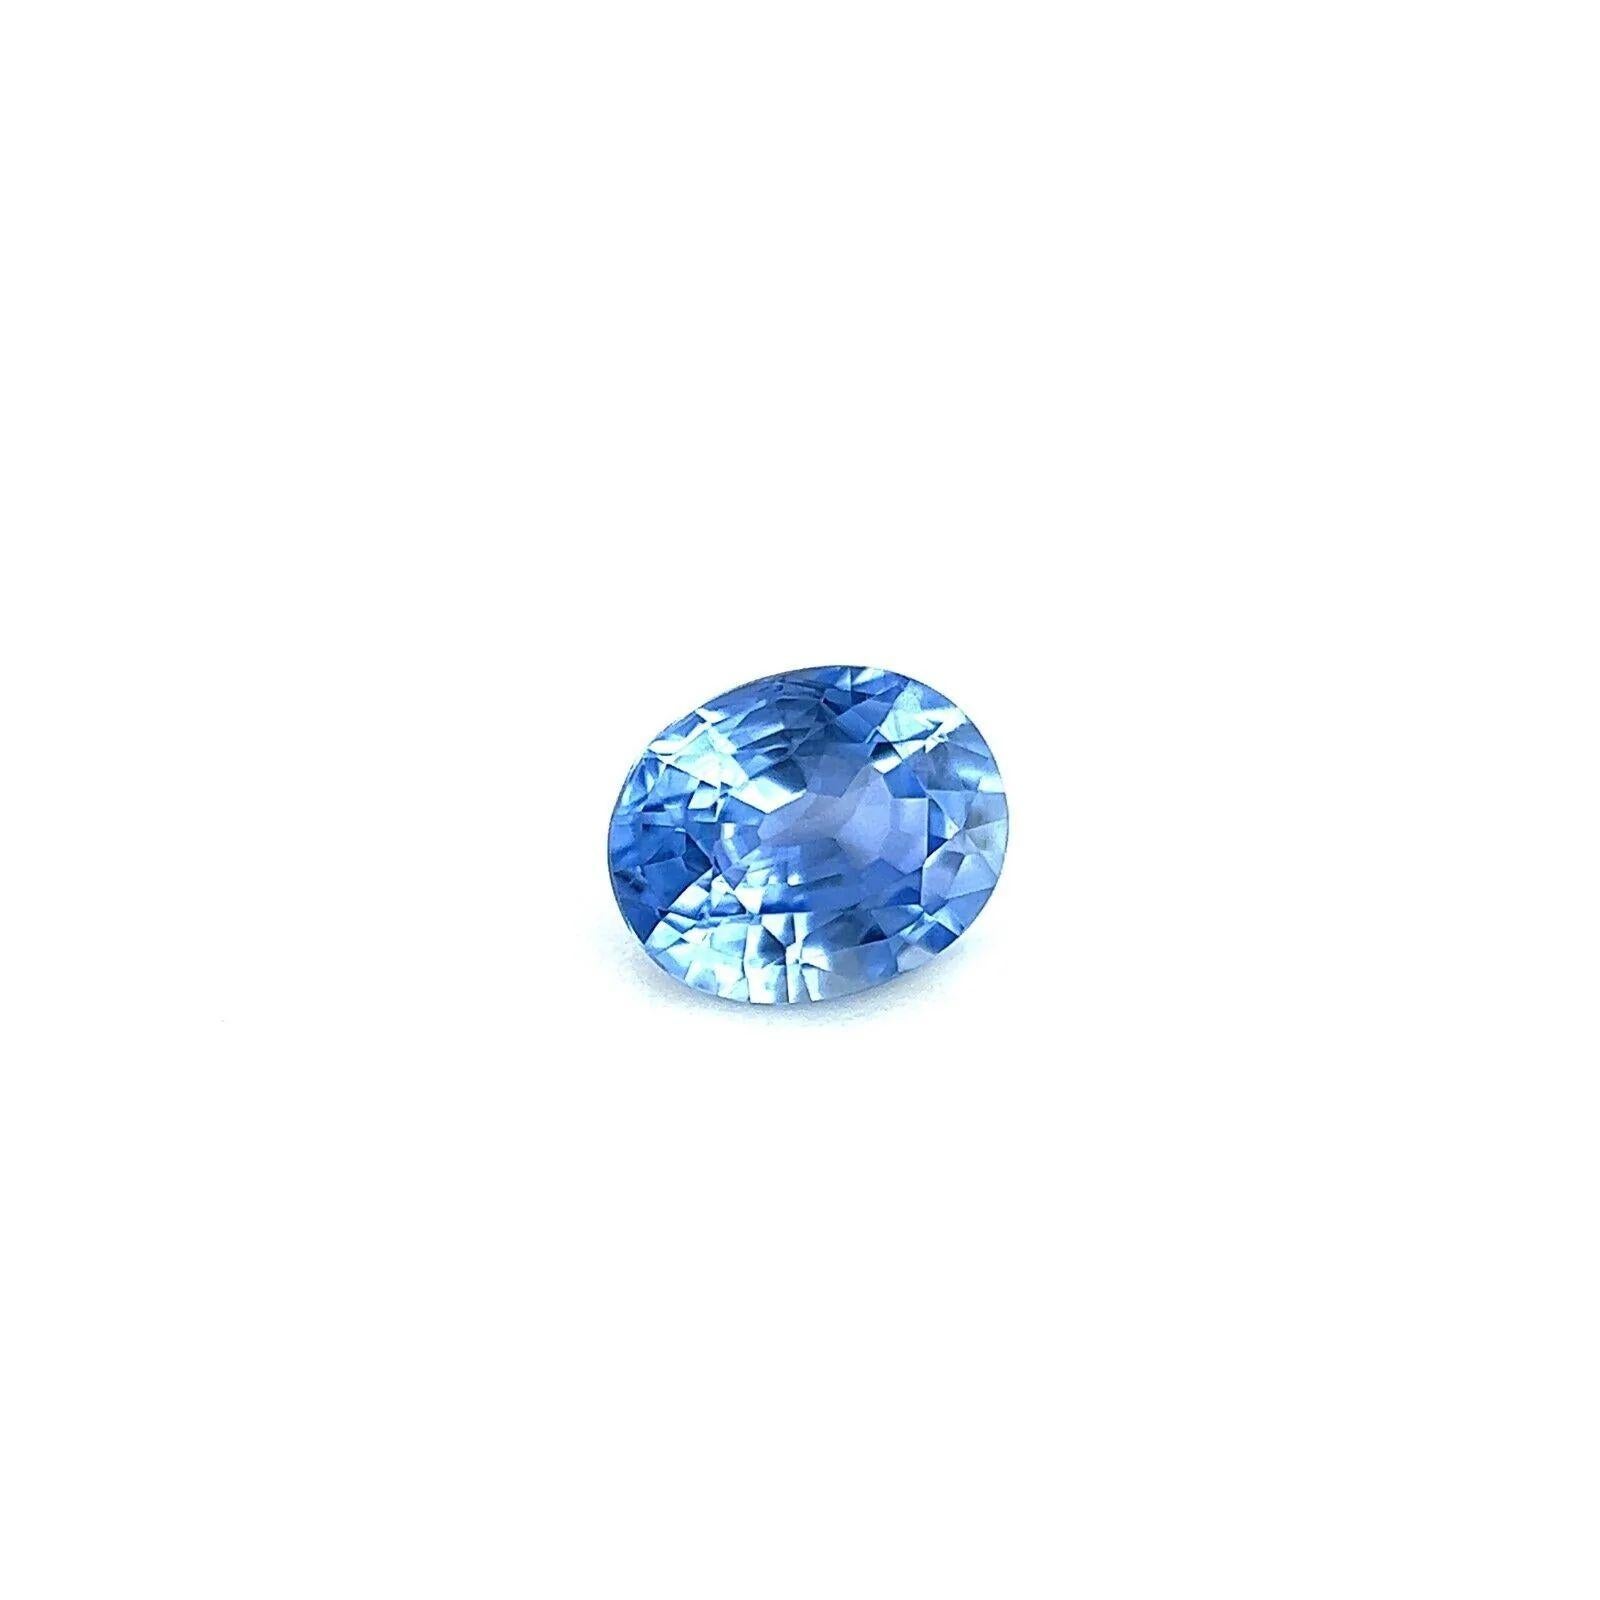 0.69ct Natürlicher Lebendiger Ceylon Blauer Saphir Oval Schliff Sri Lanka Edelstein 5.8x4.7mm

Fine Natural Vivid Blue Ceylon Sapphire Edelstein.
0,69 Karat mit einer schönen leuchtend blauen Farbe und sehr guter Reinheit, ein sehr sauberer